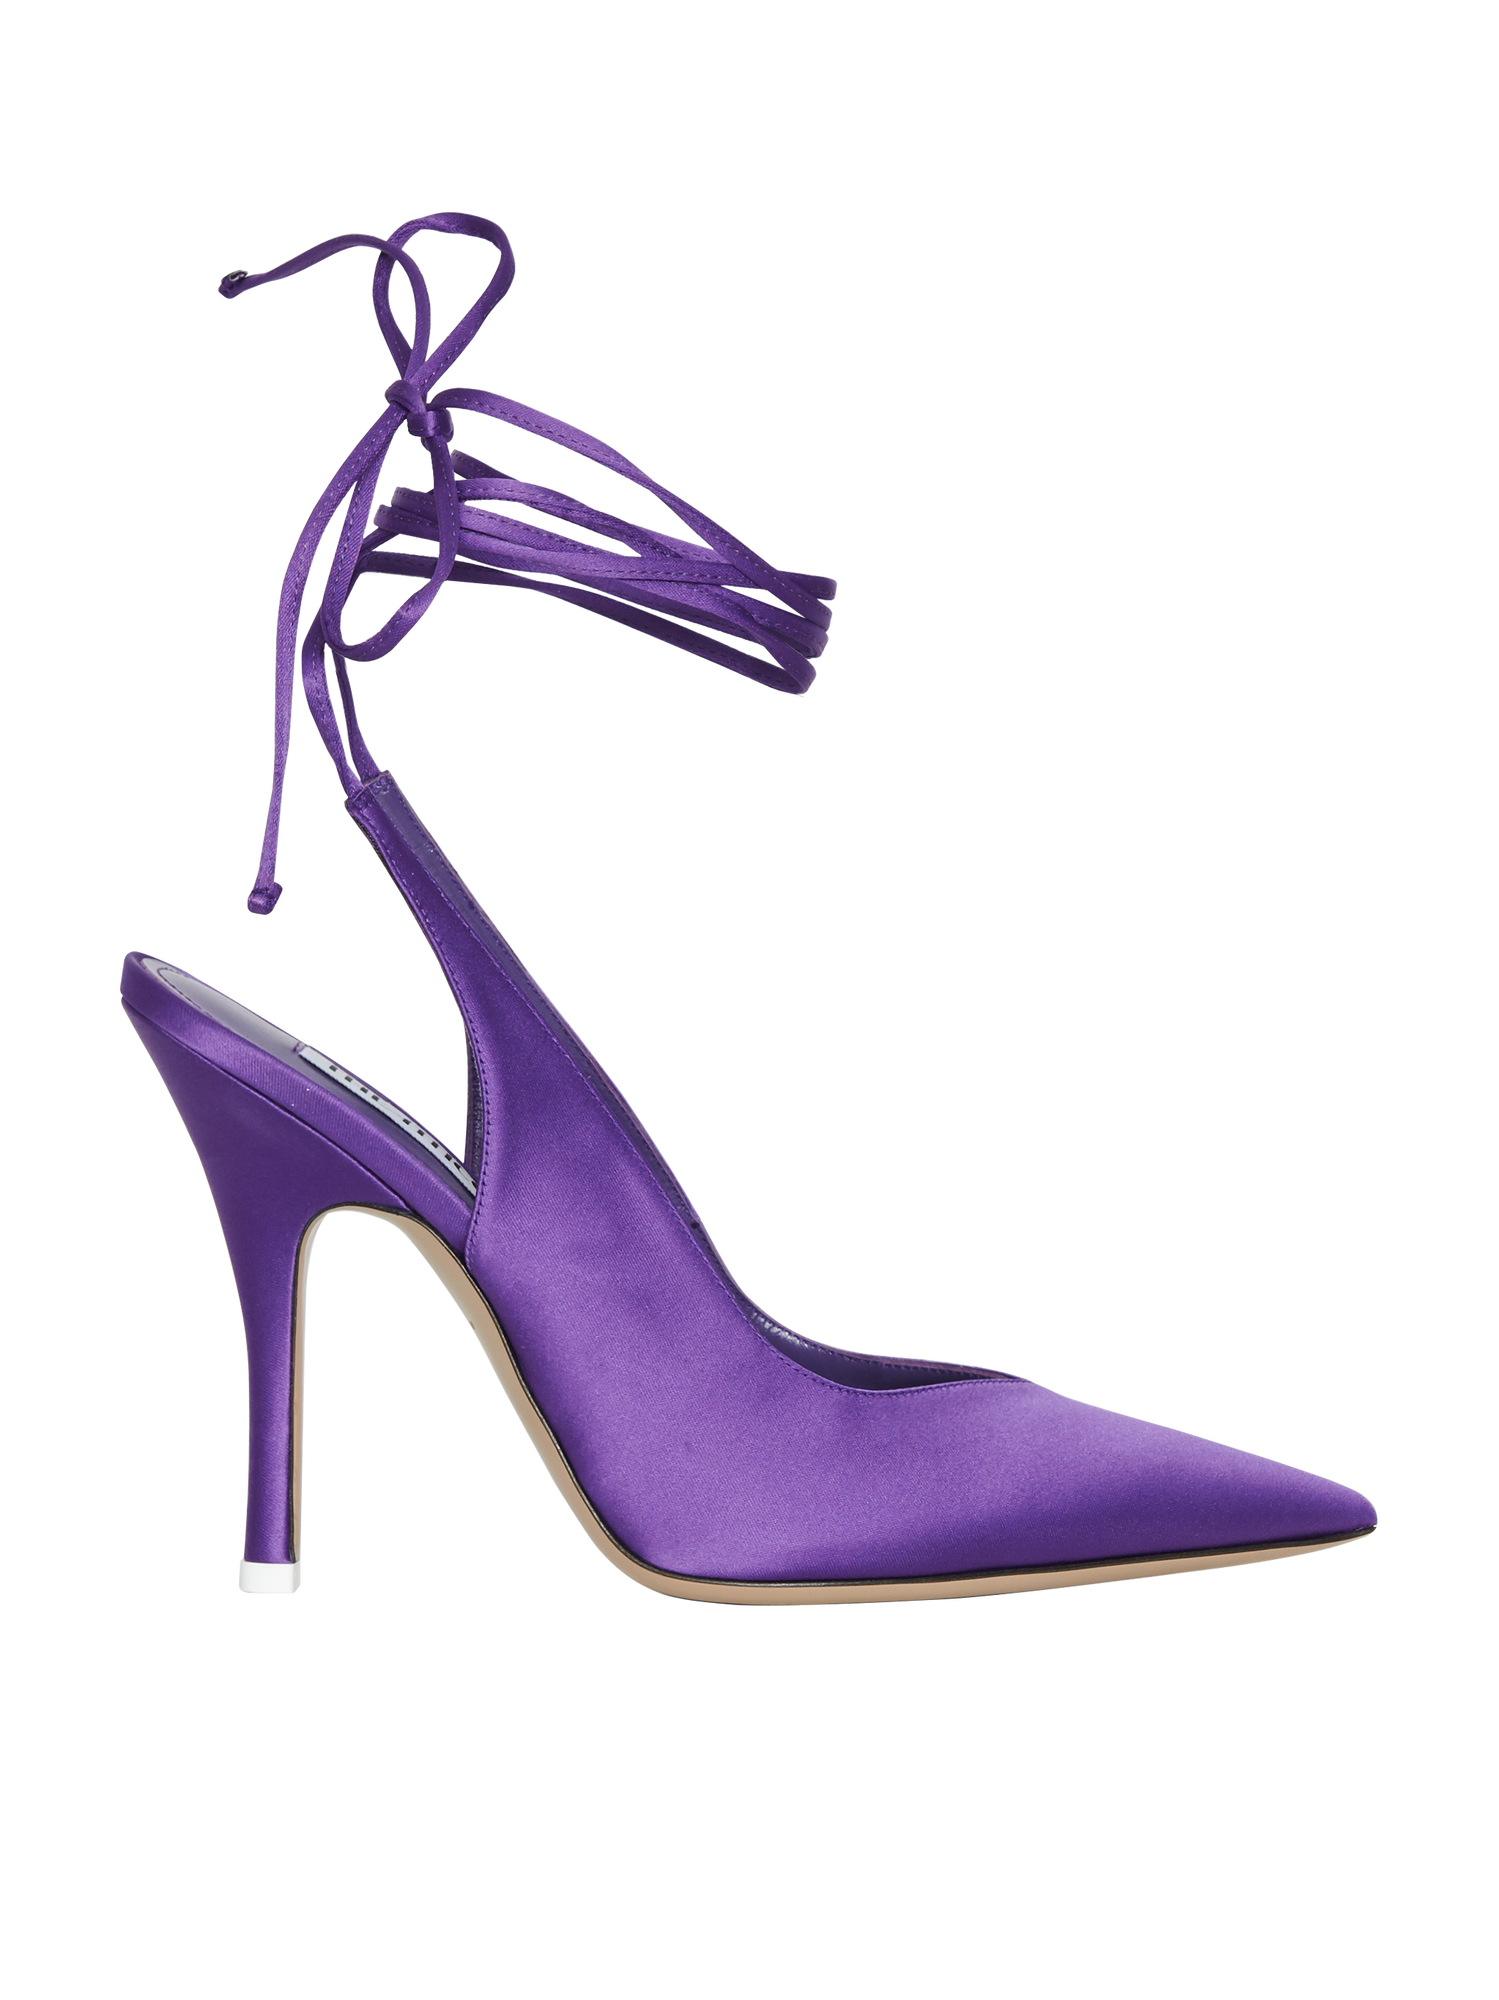 The Attico Purple Shoes Image Balcony and Attic